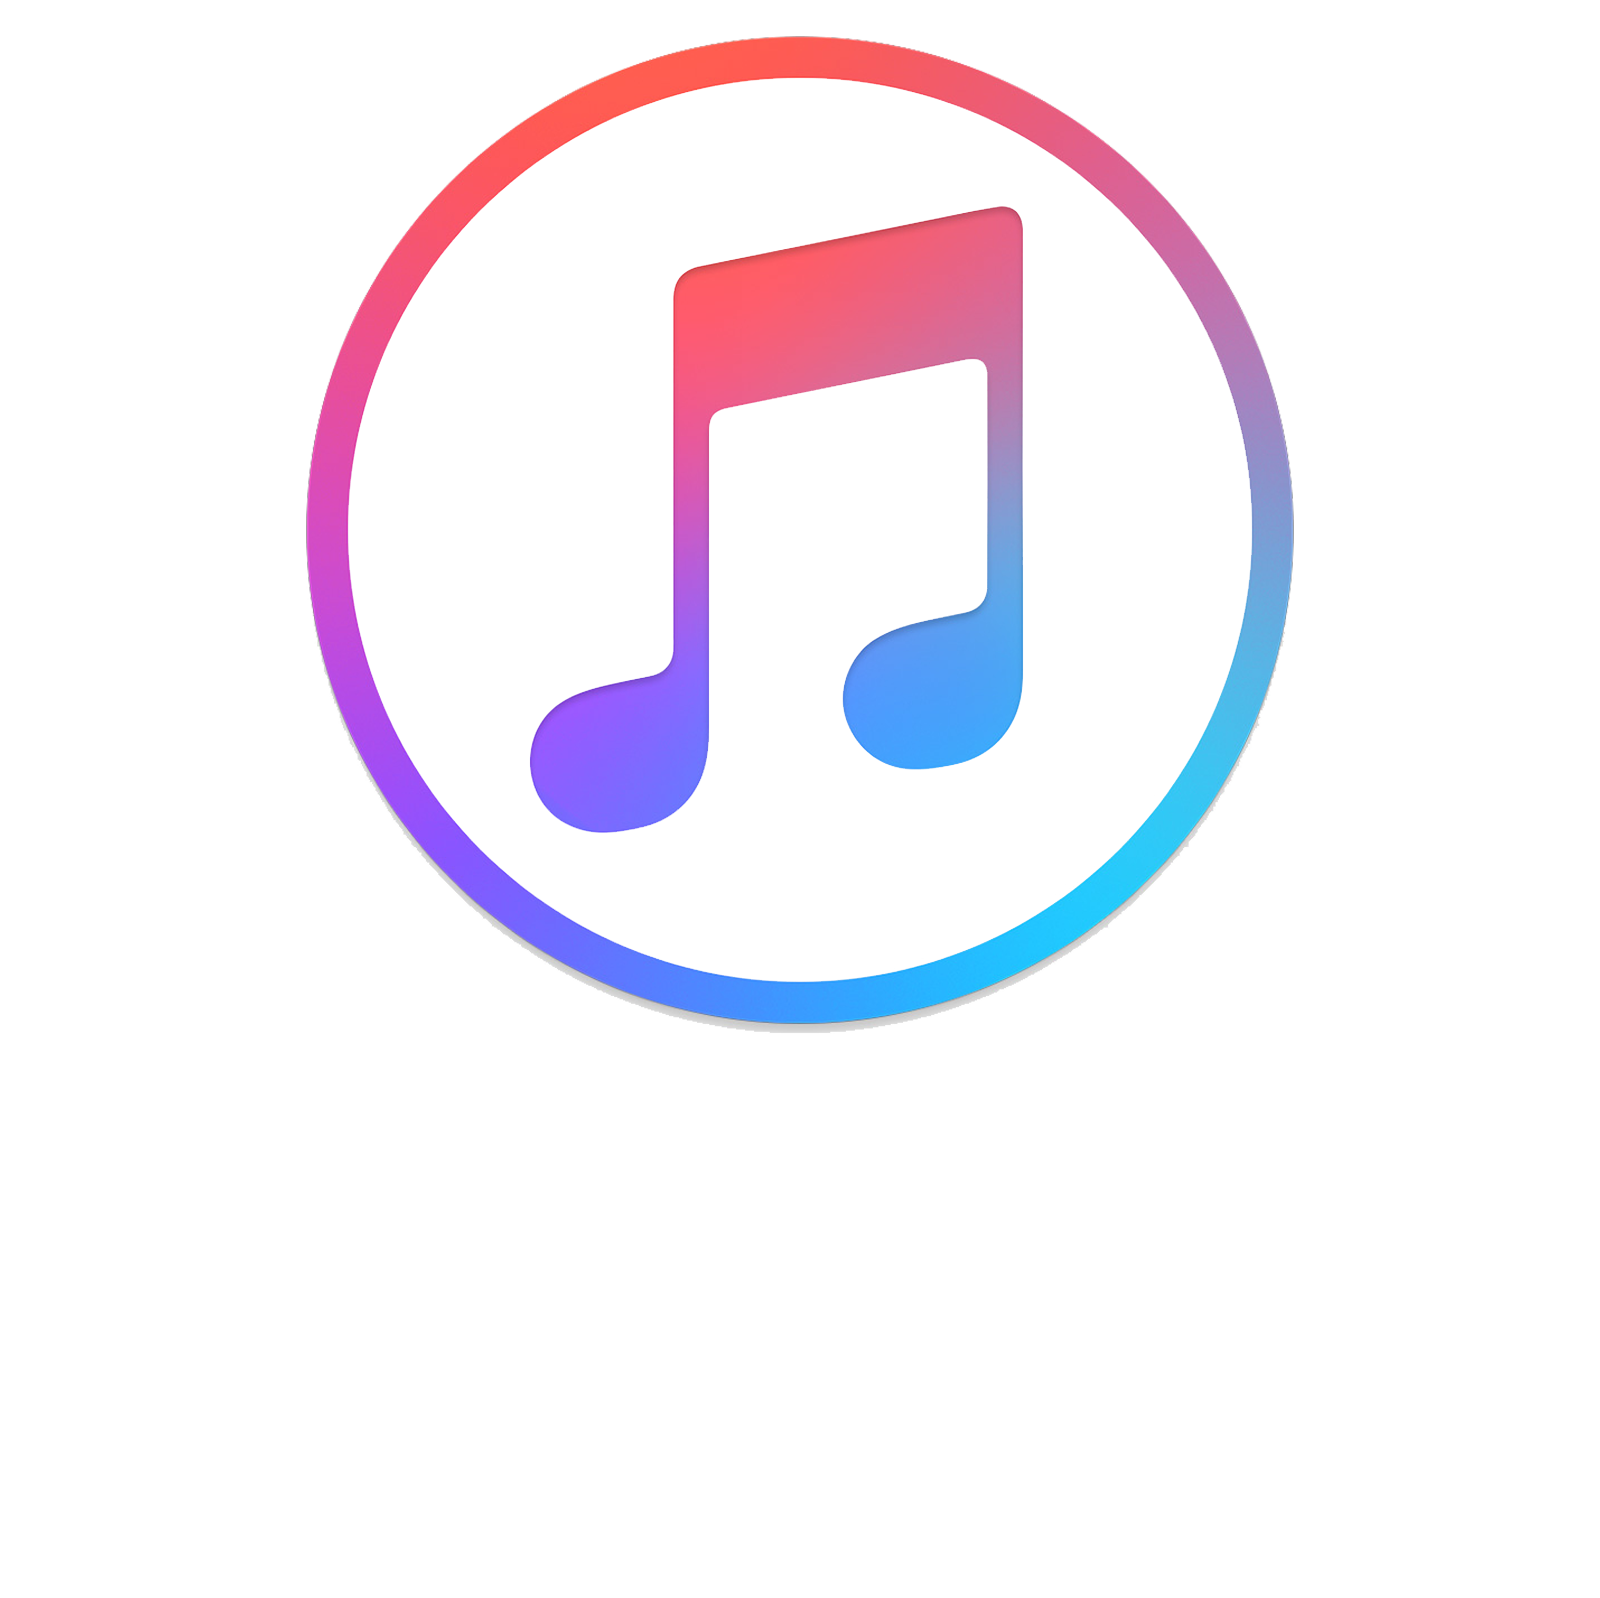 Musica music. Лого эпл Мьюзик. Музыкальный логотип. Иконка Apple Music. Музыка иконка.